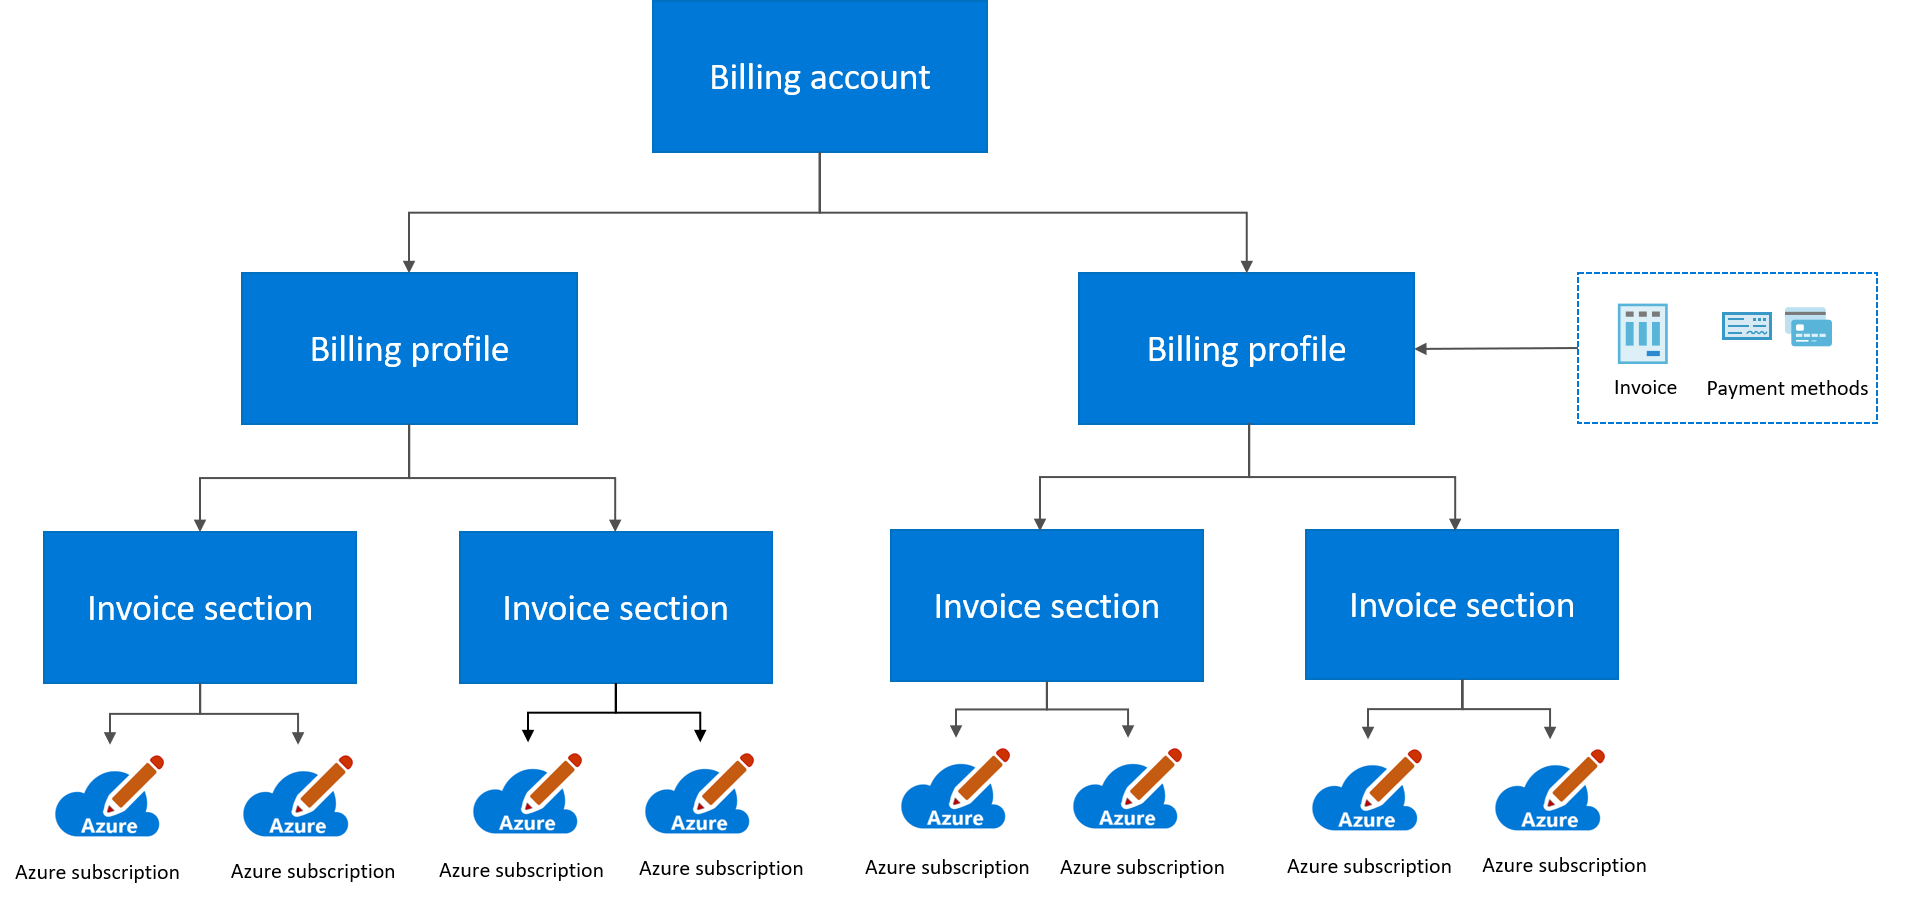 显示 Microsoft 客户协议计费层次结构的关系图。